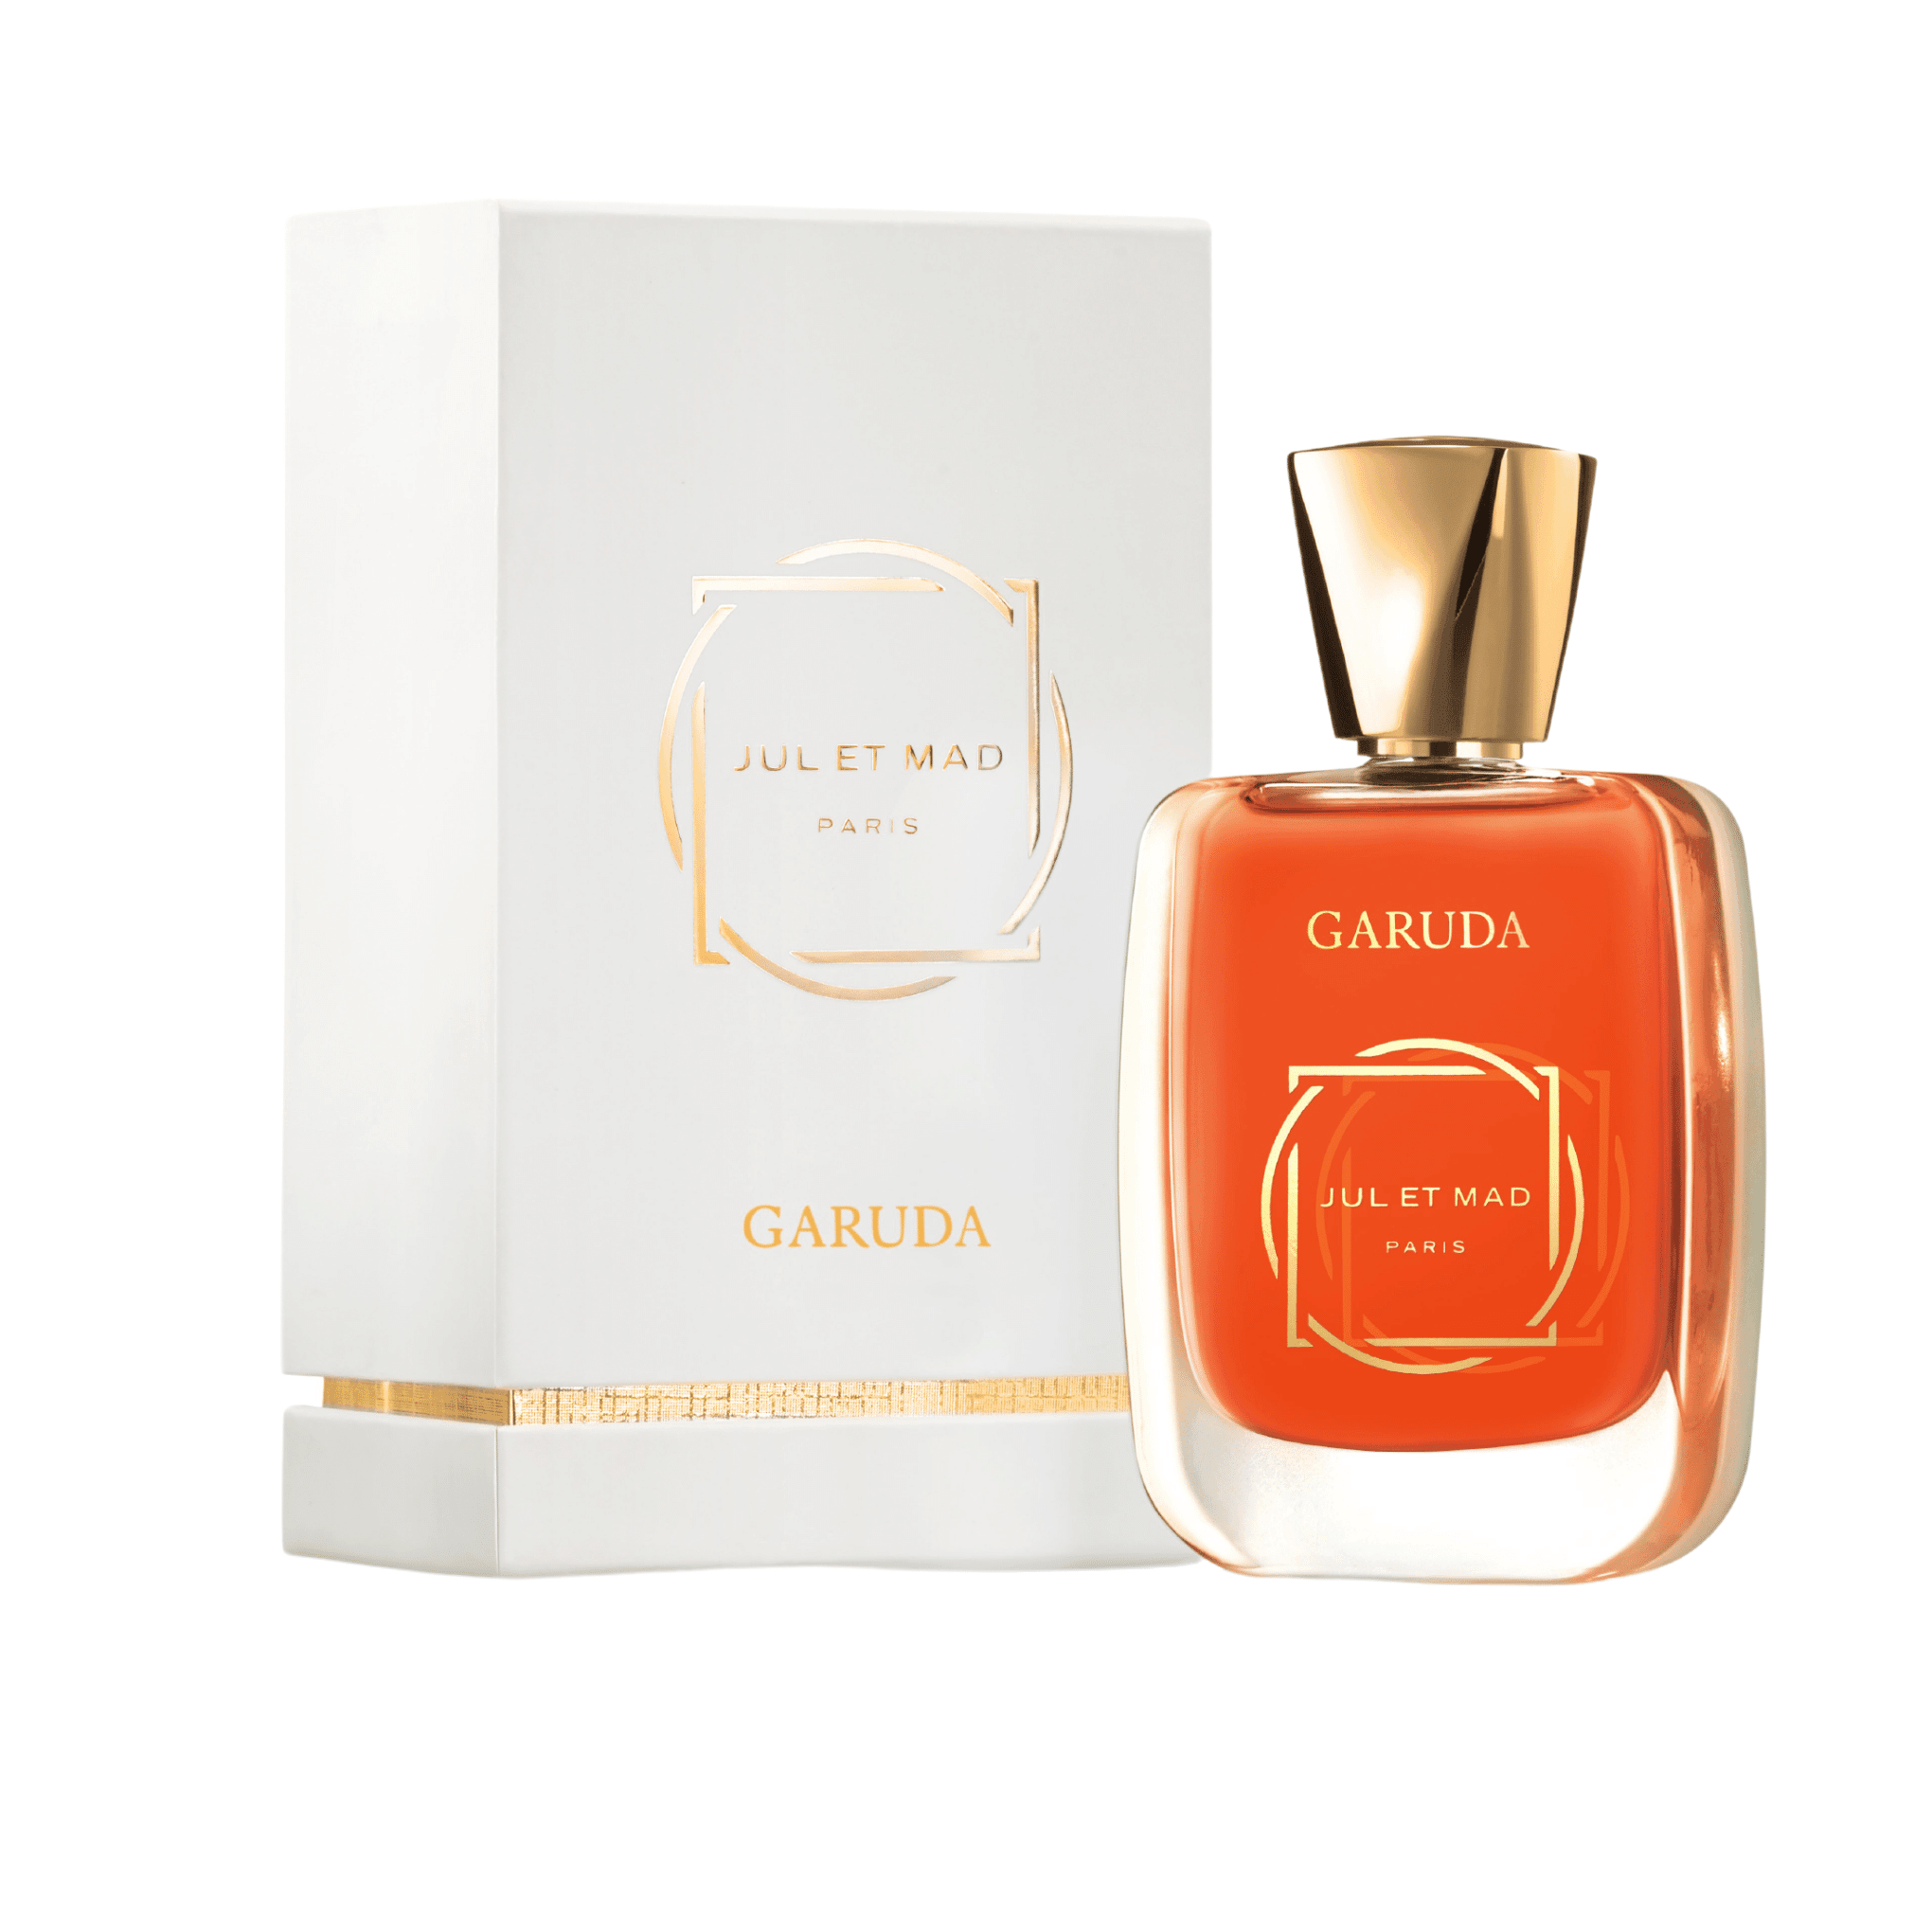 Garuda perfume